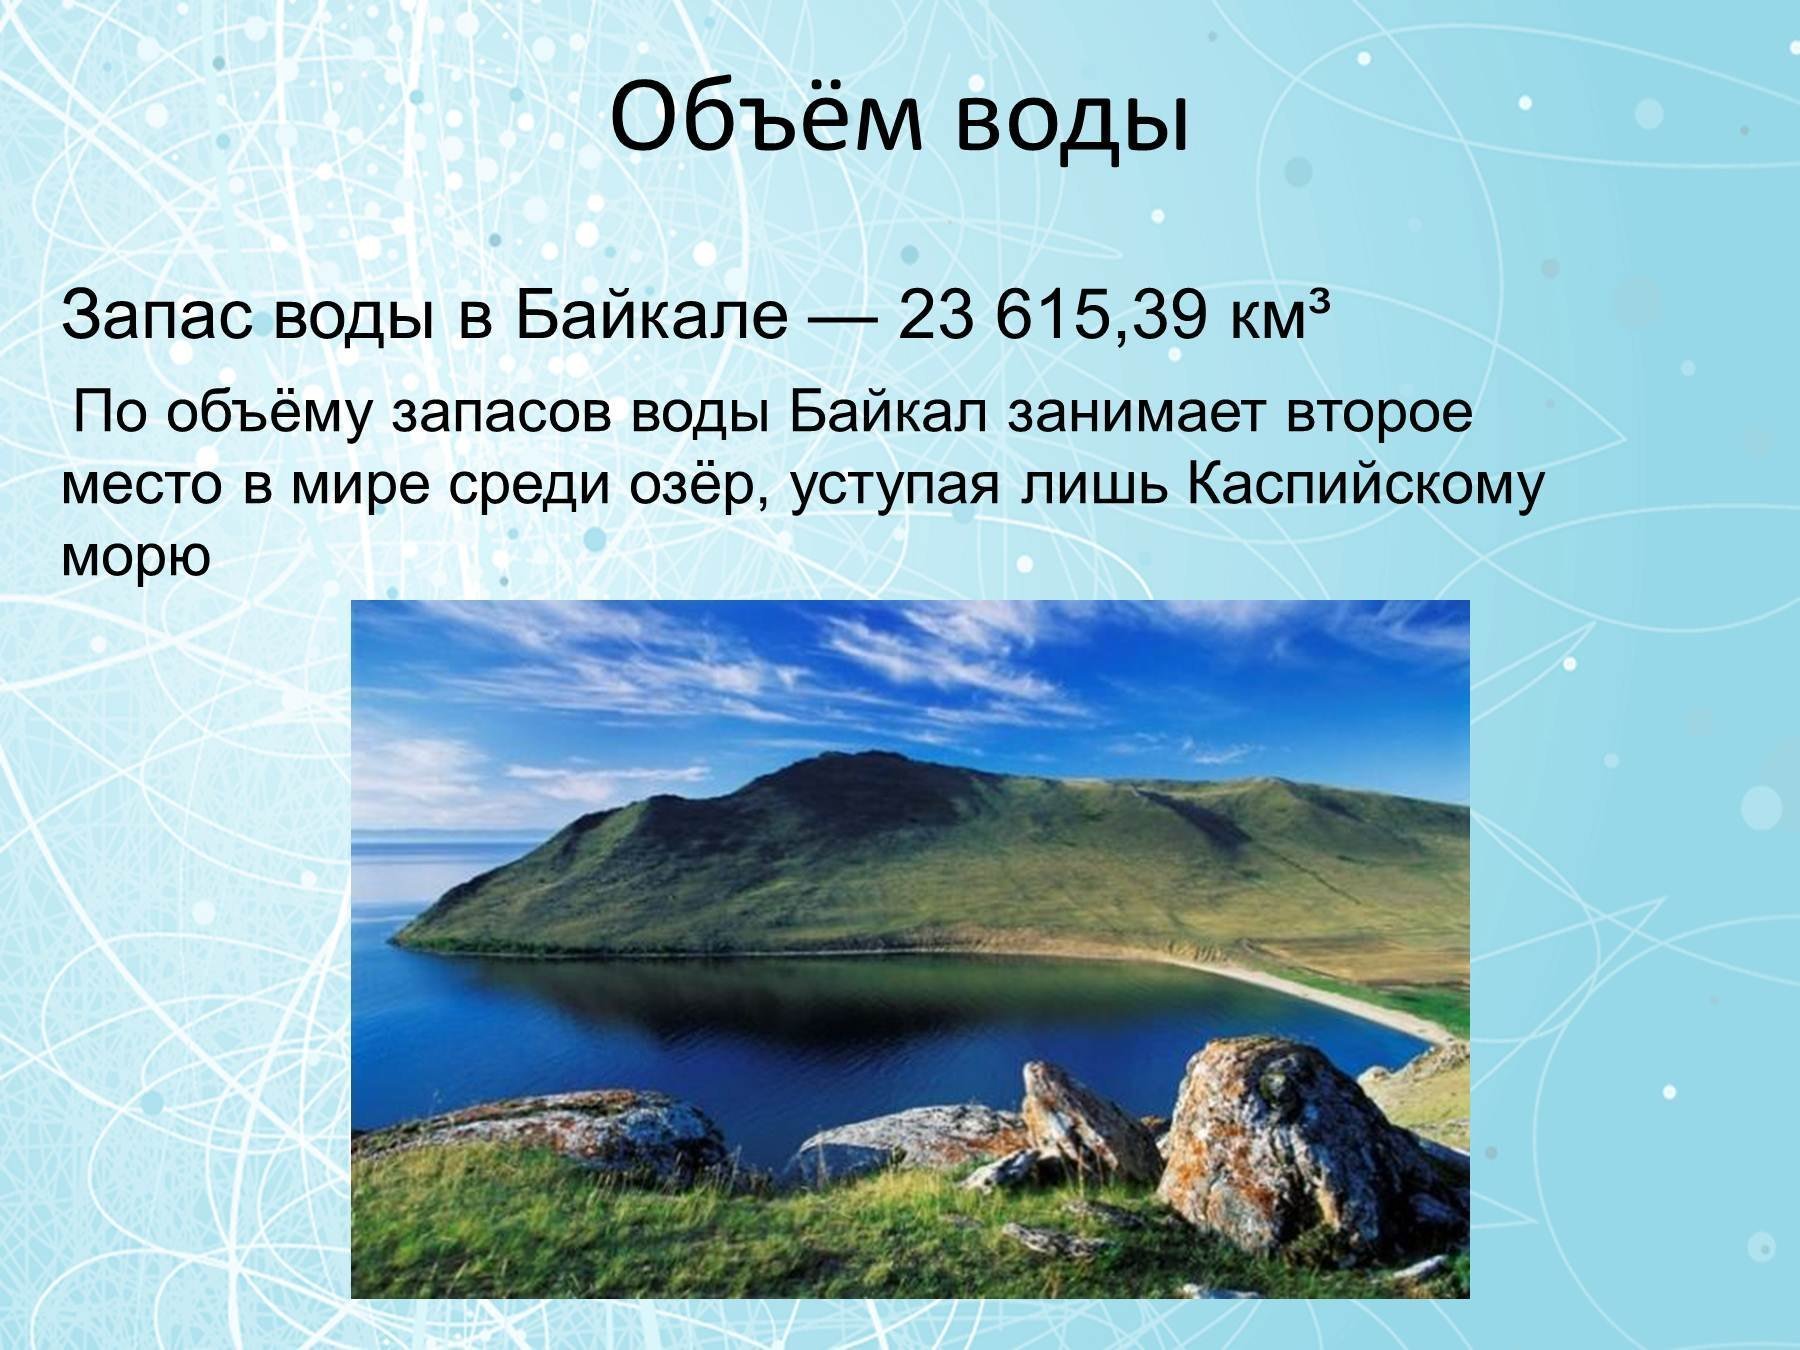 Процент воды в байкале. Объем воды в Байкале. Озеро Байкал объем воды. Запасы воды в Байкале. Объем озера Байкал.